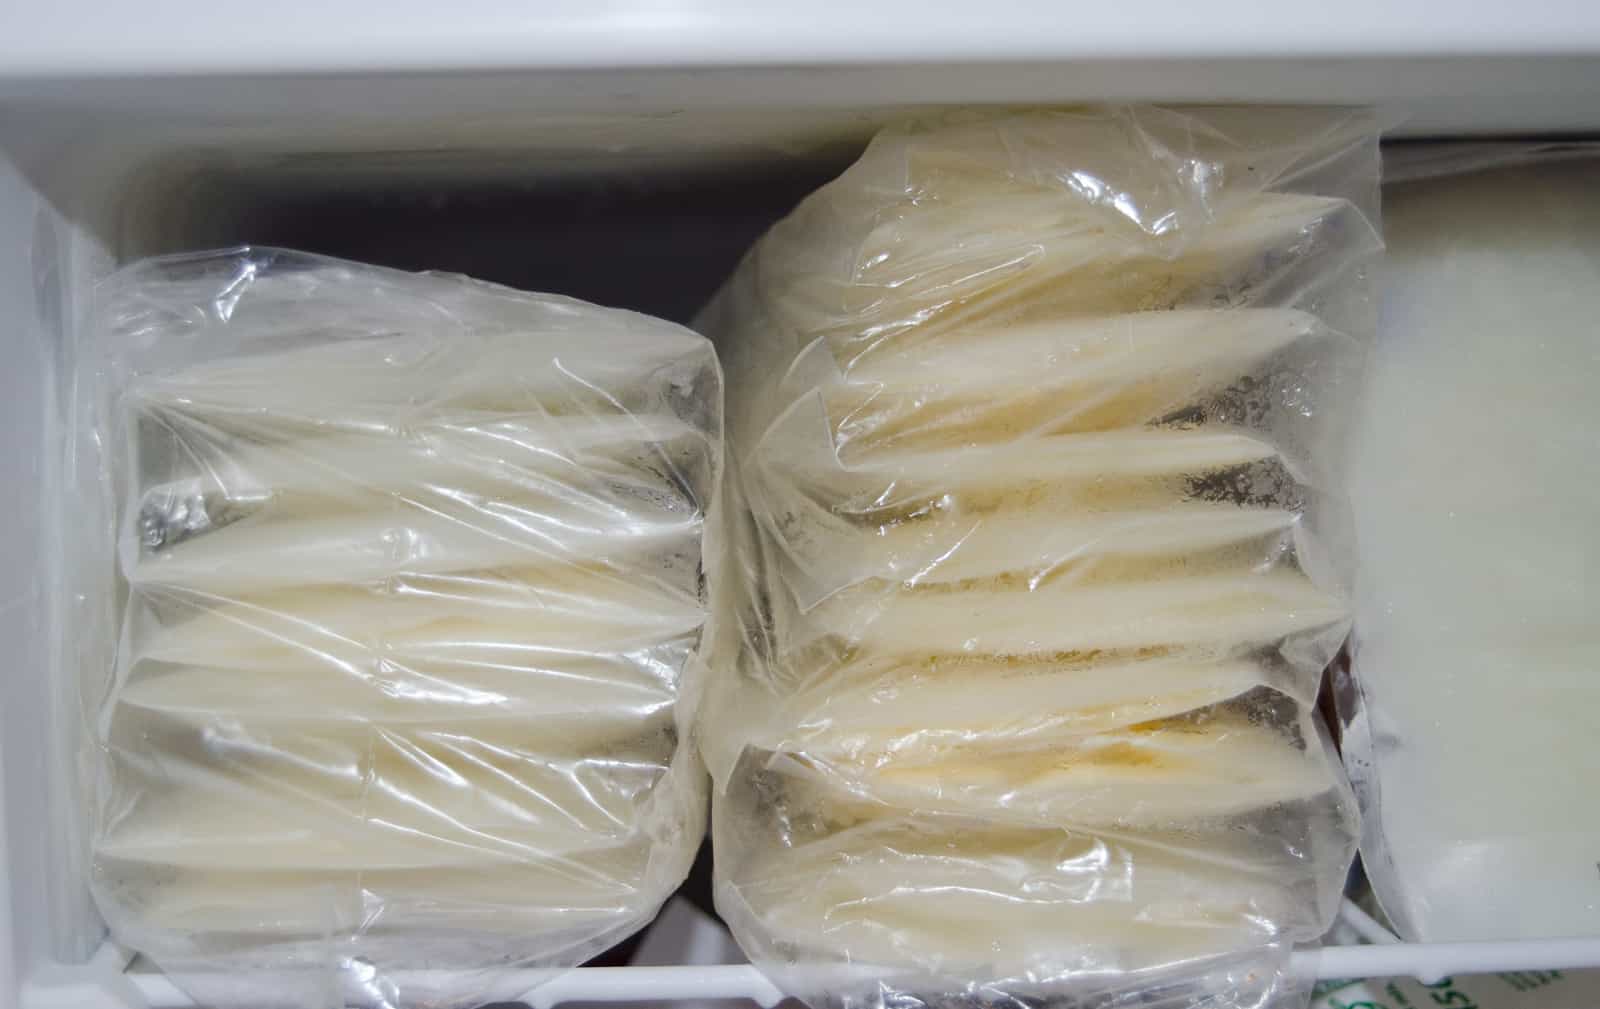 Frozen Breast Milk in Freezer - Traveling with Frozen Breast Milk 